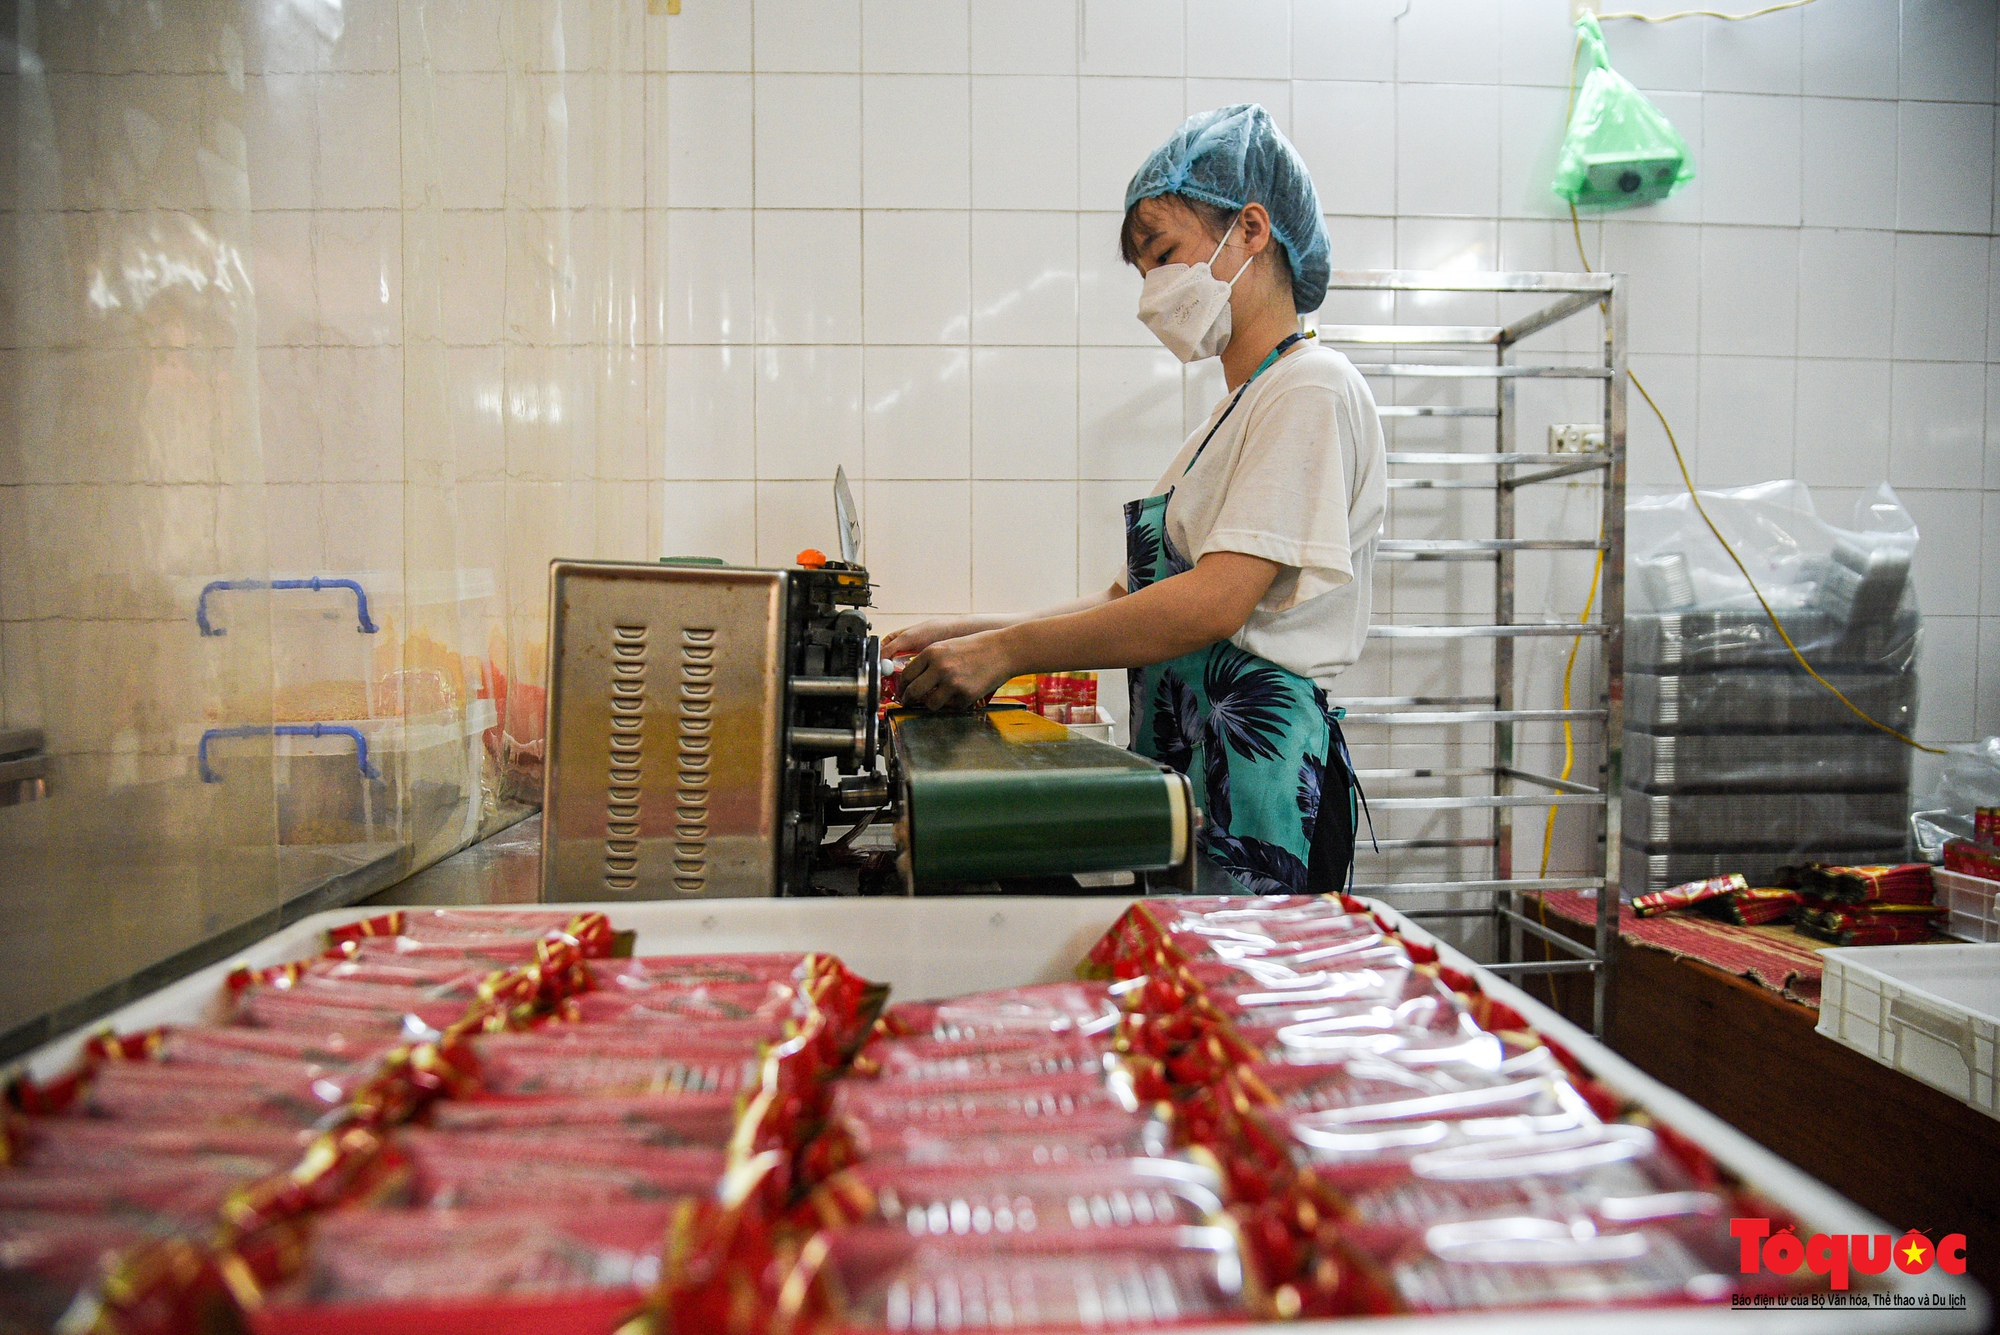 Mục sở thị quy trình sản xuất bánh Trung thu ở thủ phủ sản xuất bánh kẹo lâu đời tại Hà Nội - Ảnh 13.